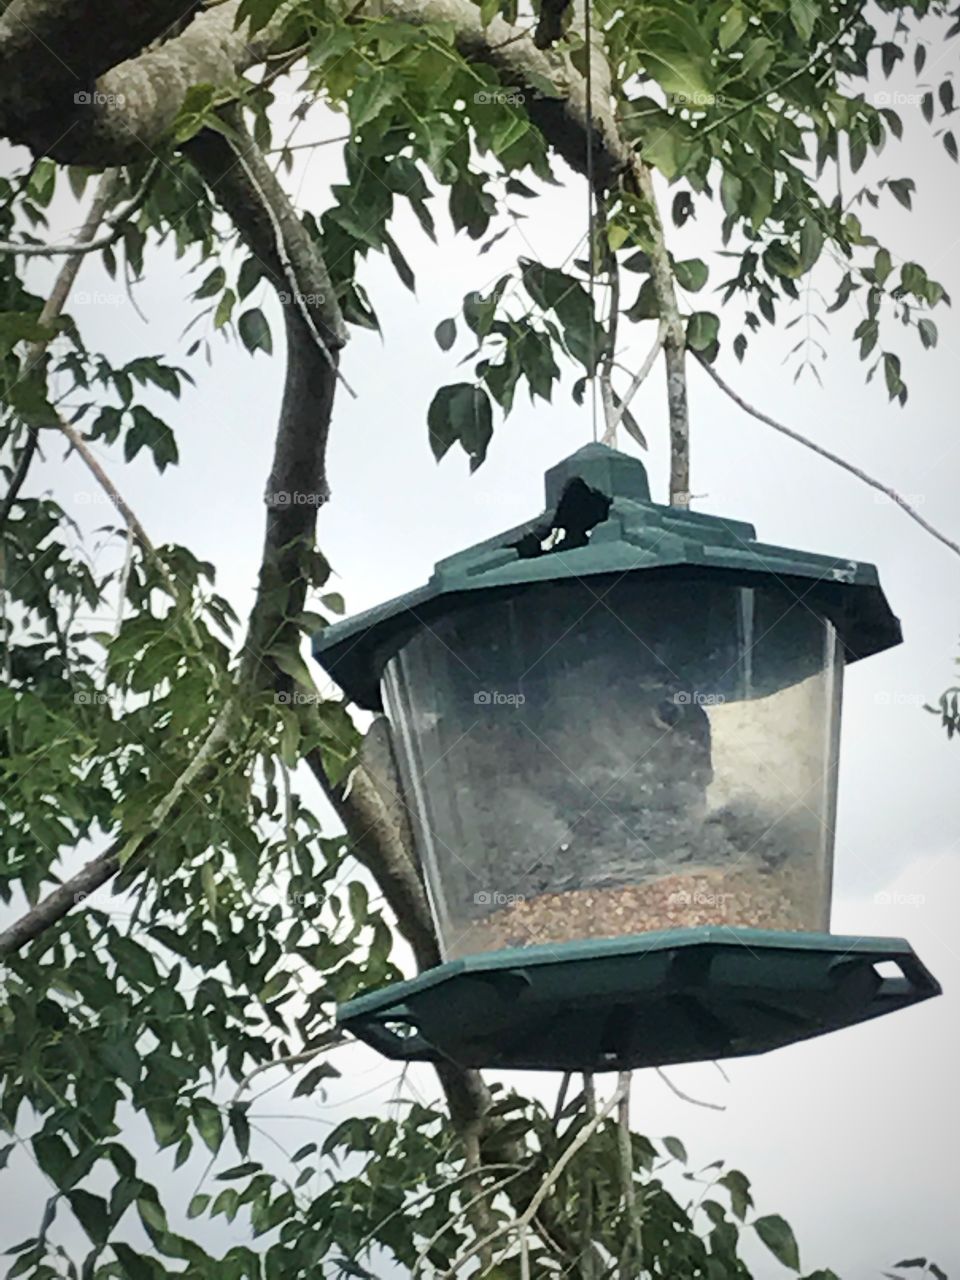 Squirrel inside the bird feeder 